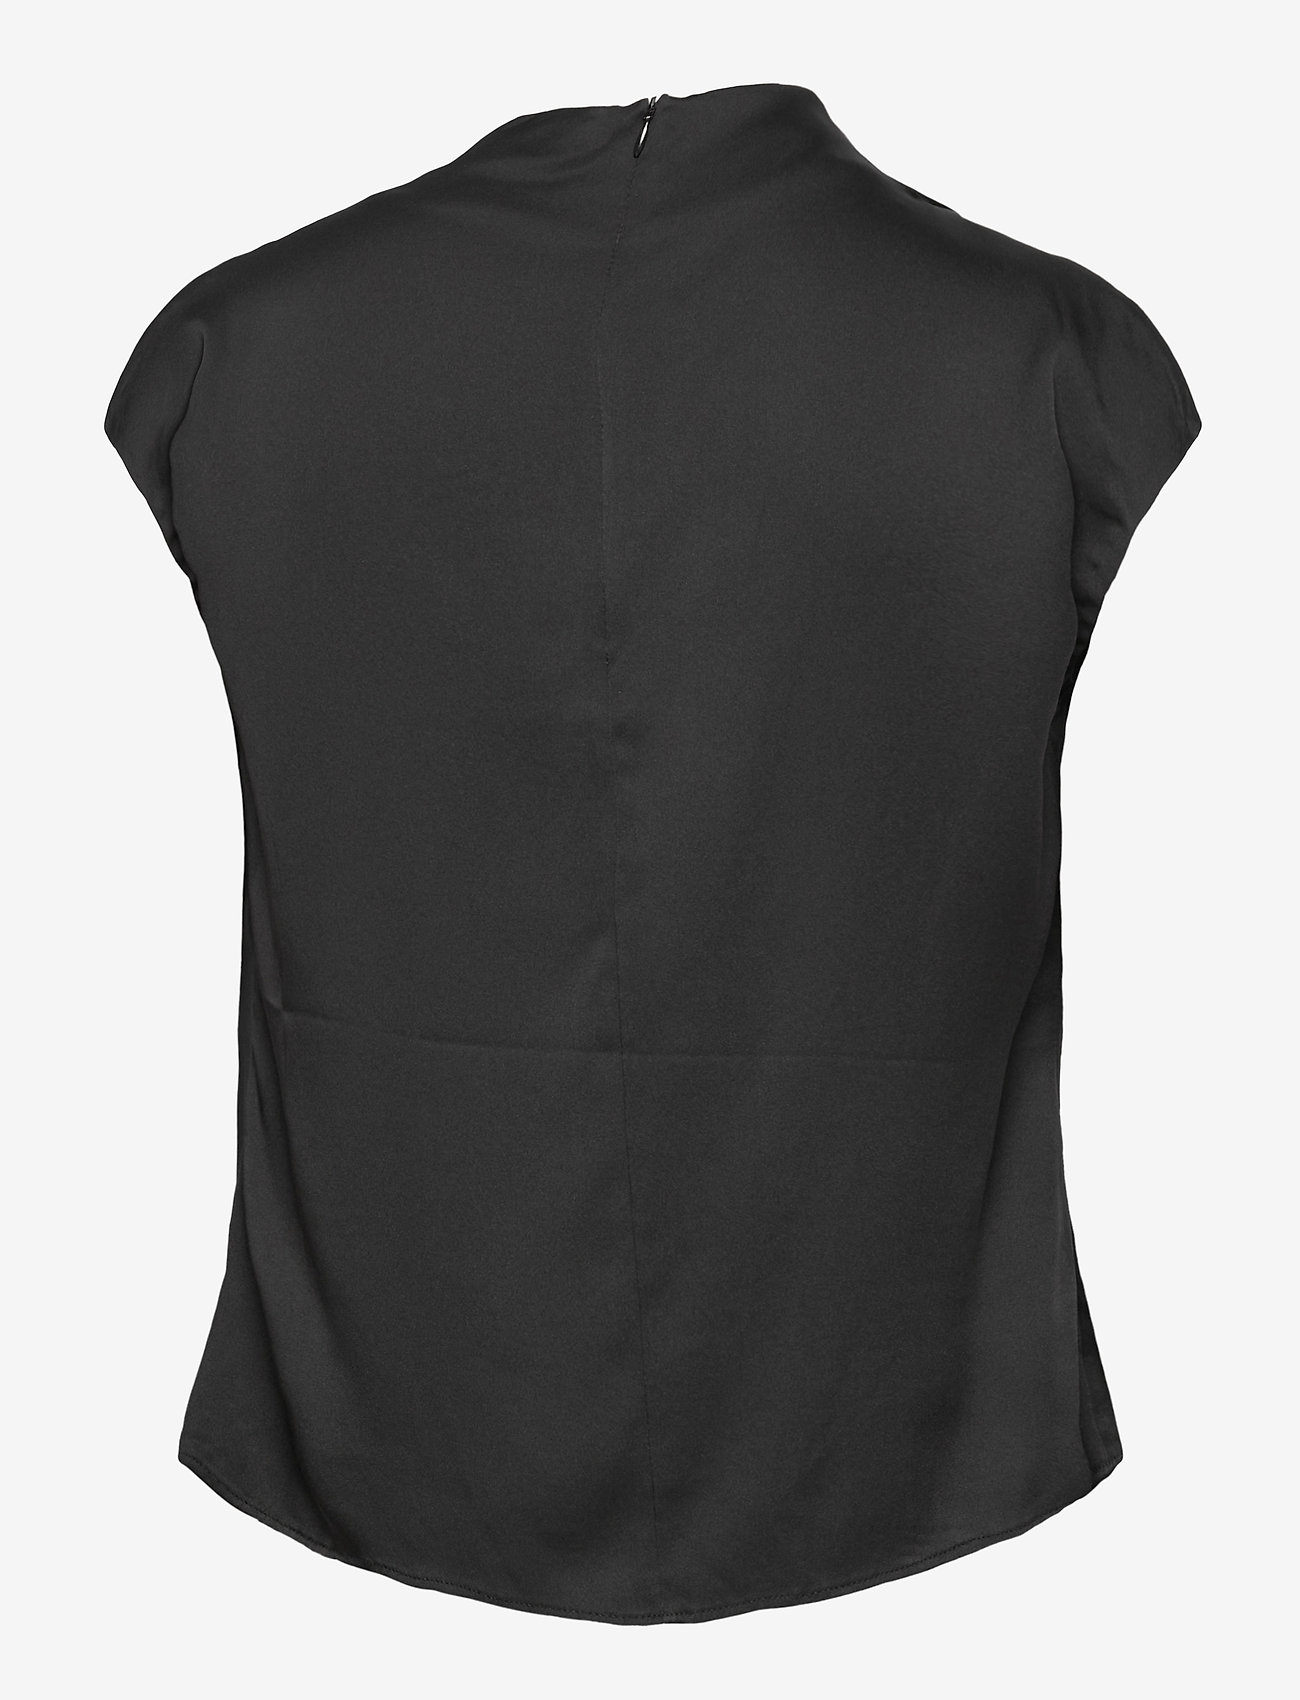 Ahlvar Gallery - Lima top - bluzki z krótkim rękawem - black - 2